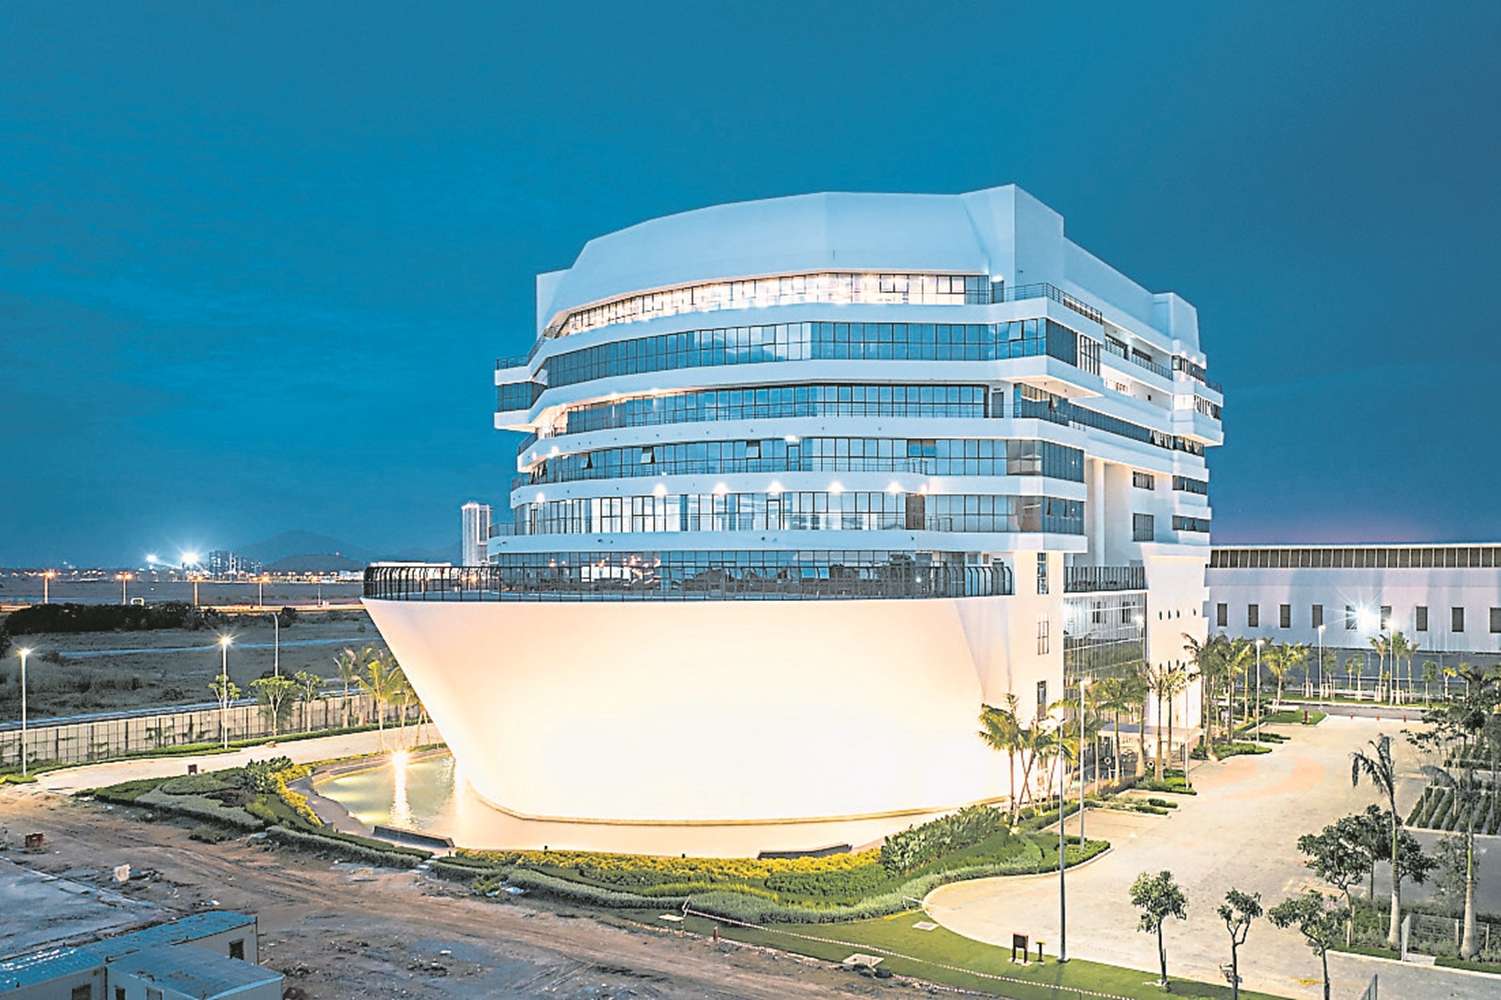 屹立在峇都交灣工業區的海岸邊的The Ship Campus，儼然是“硬性工業區”峇都交灣的一件精緻閃耀的藝術建築物。